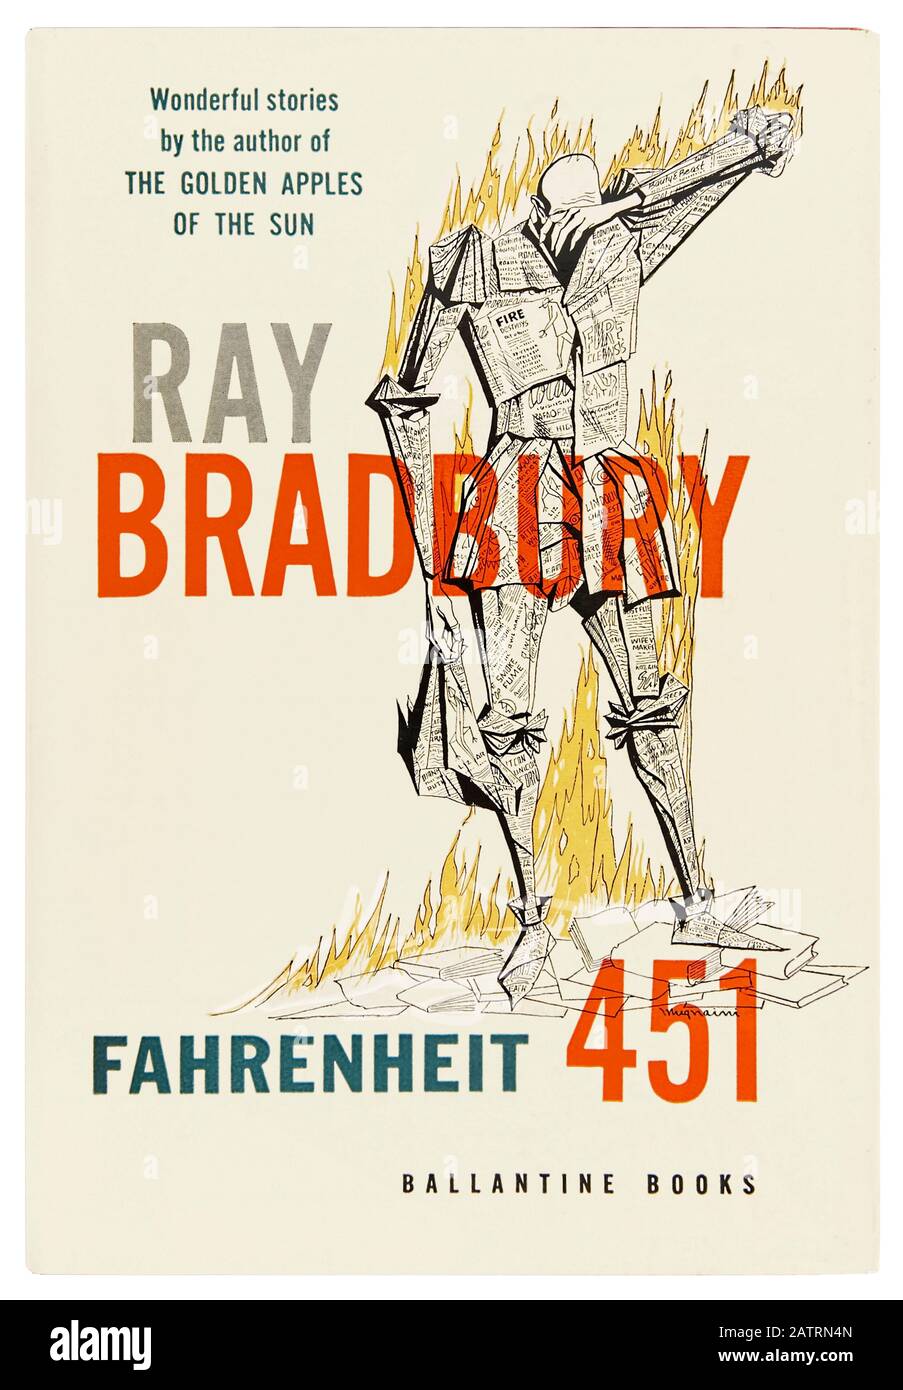 Fahrenheit 451 von Ray Bradbury (1920-2012), ein dystopischer Roman über Guy Montag, einen Feuerwehrmann in einer Gesellschaft, in der Bücher von Feuerwehrleuten geächtet und vernichtet werden. Foto von 1953 Erstausgabe Frontcover mit einer Illustration von Joe Mugnaini (1912-1992). Stockfoto